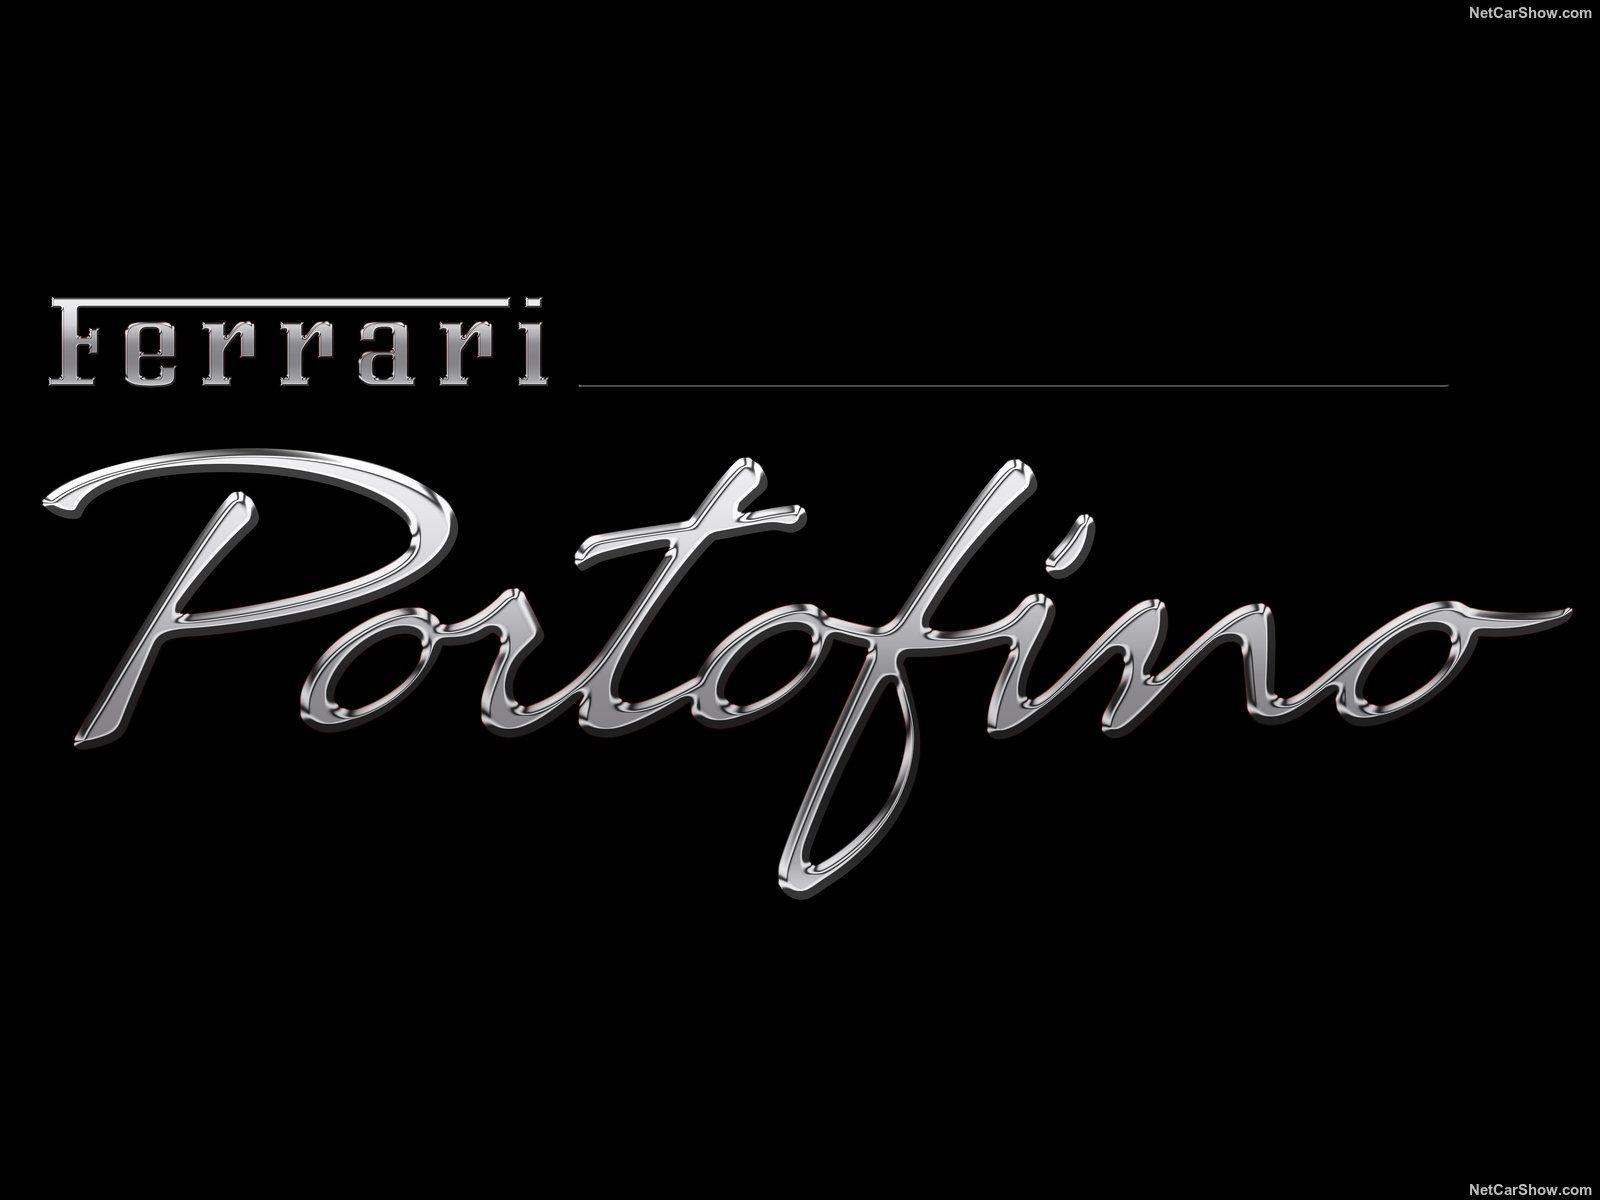 Brand New Ferrari Portofino Revealed